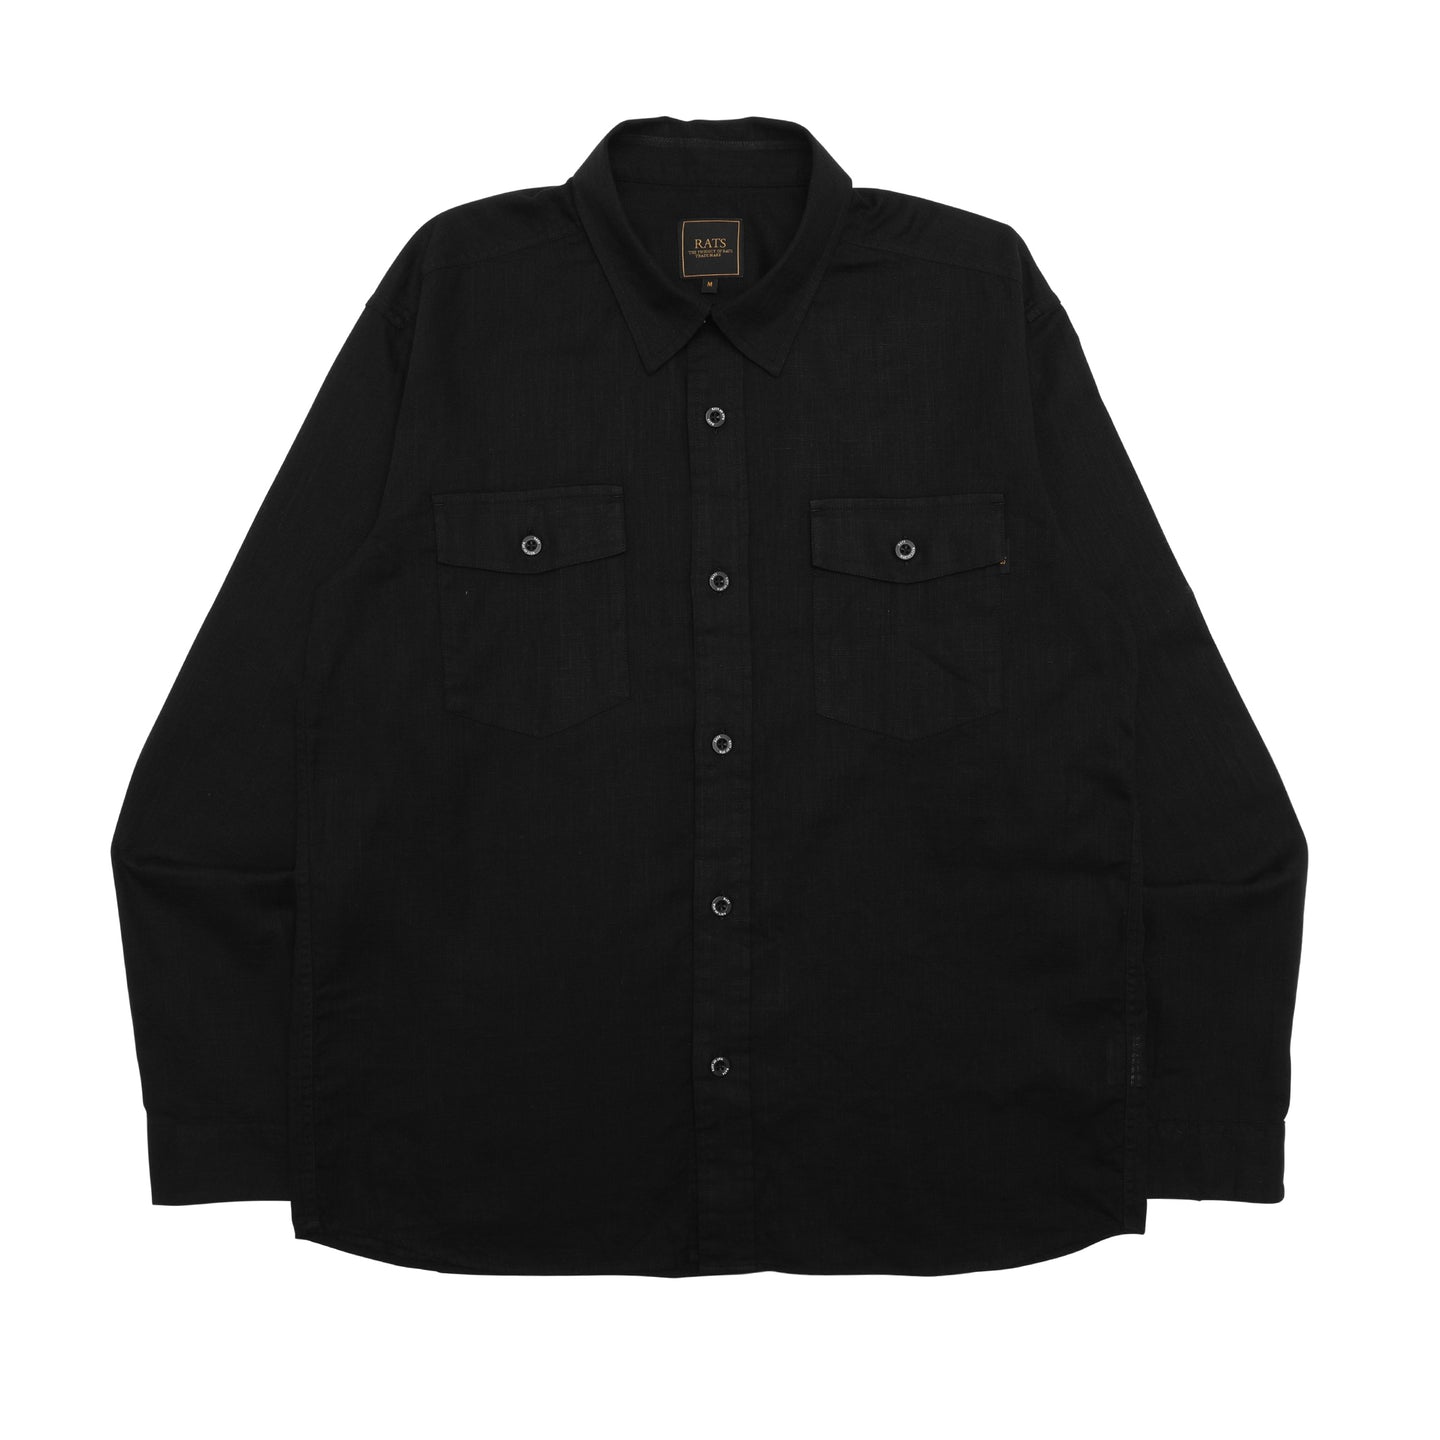 Rats Piece Dyed L/S Shirt Black